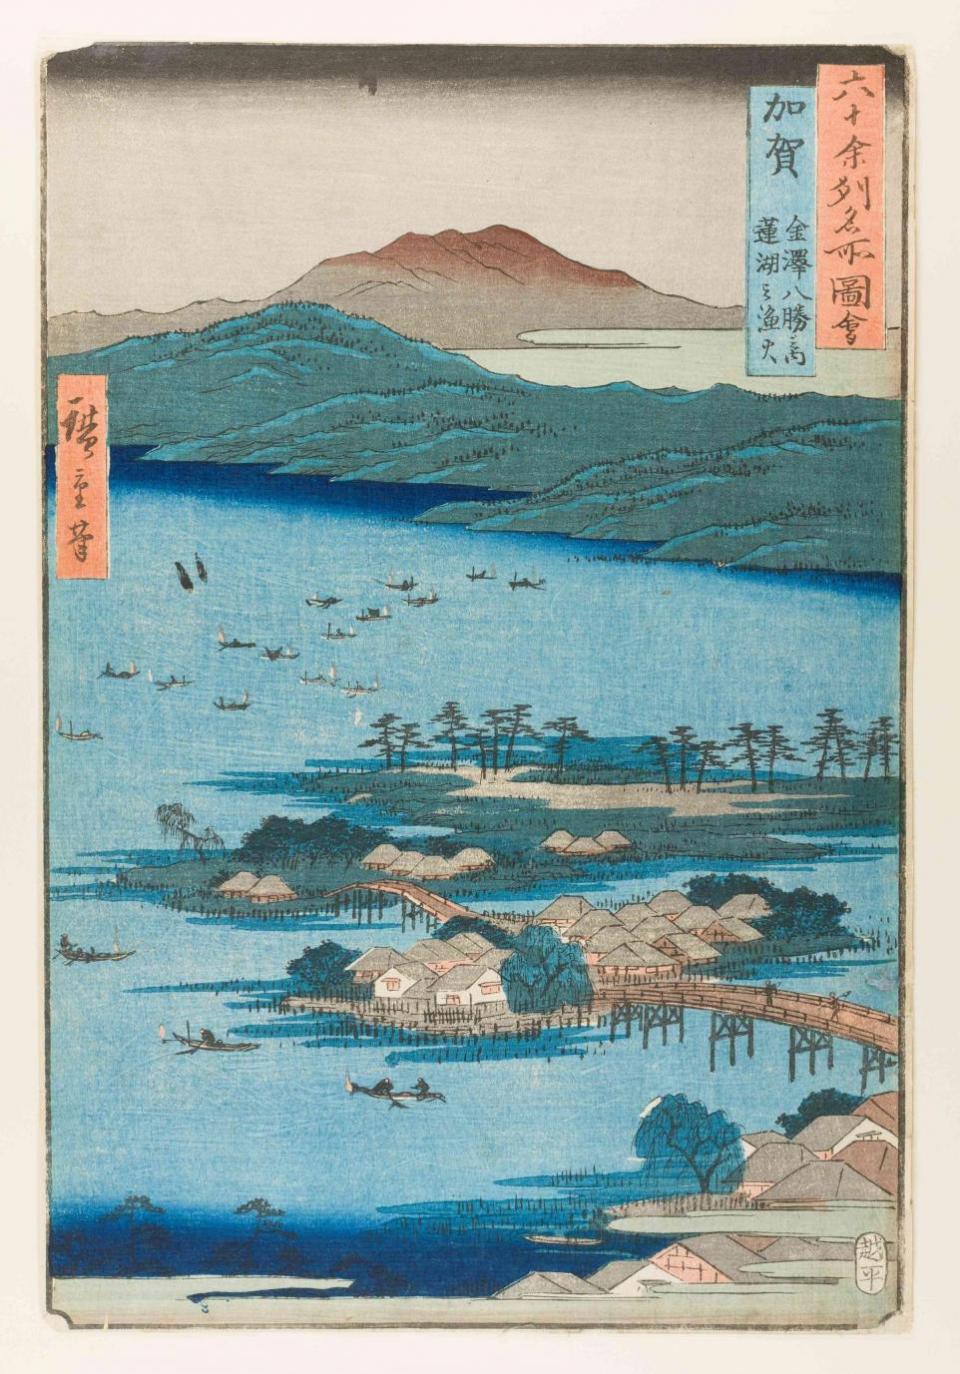 York Press: Utagawa Hiroshige, Kanazawa in Kaga Province